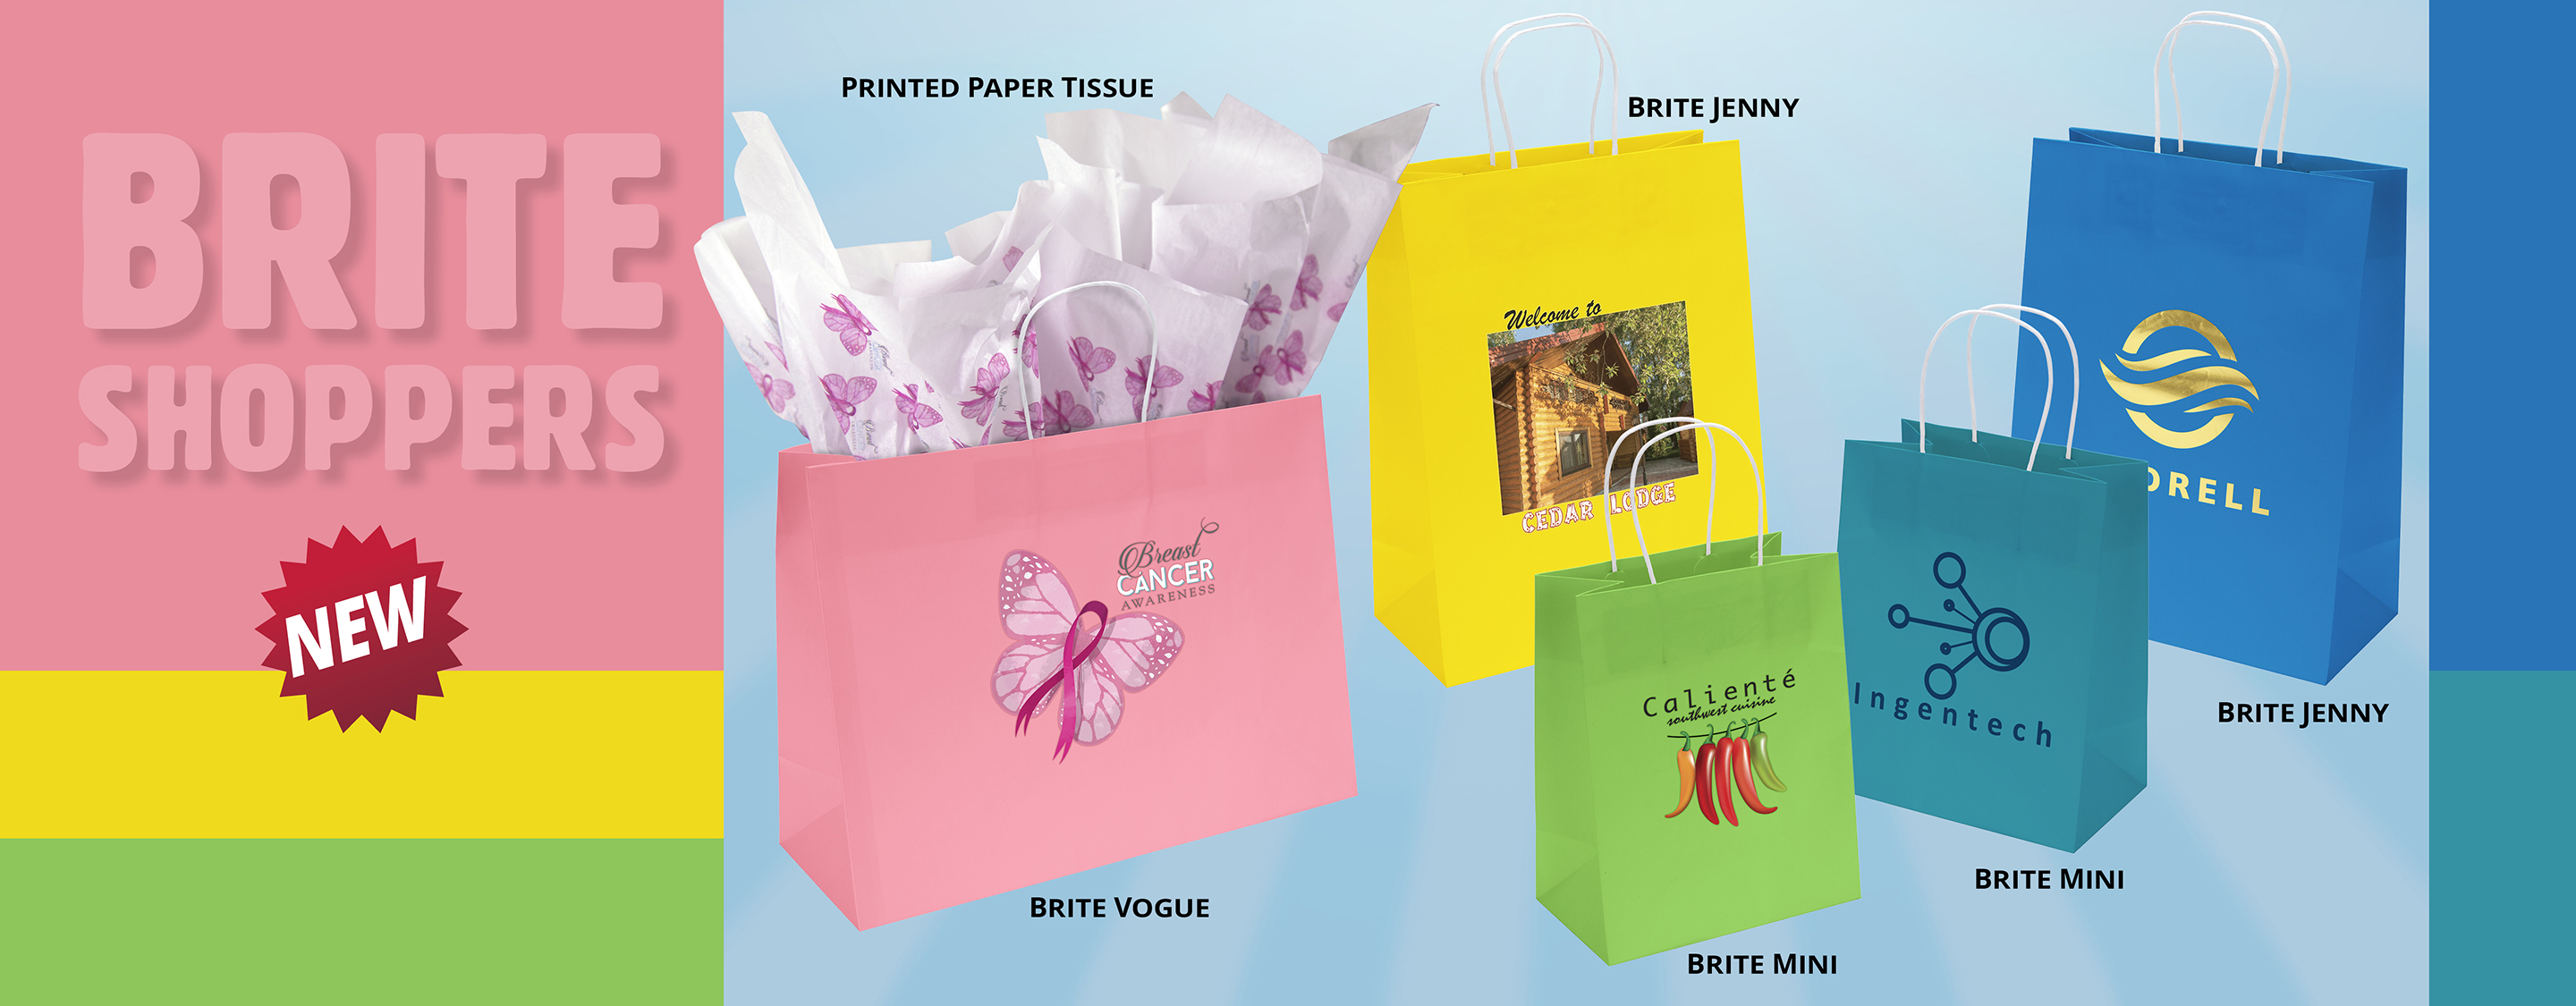 Supermarket Carrier bags - Packaging Industries Ltd